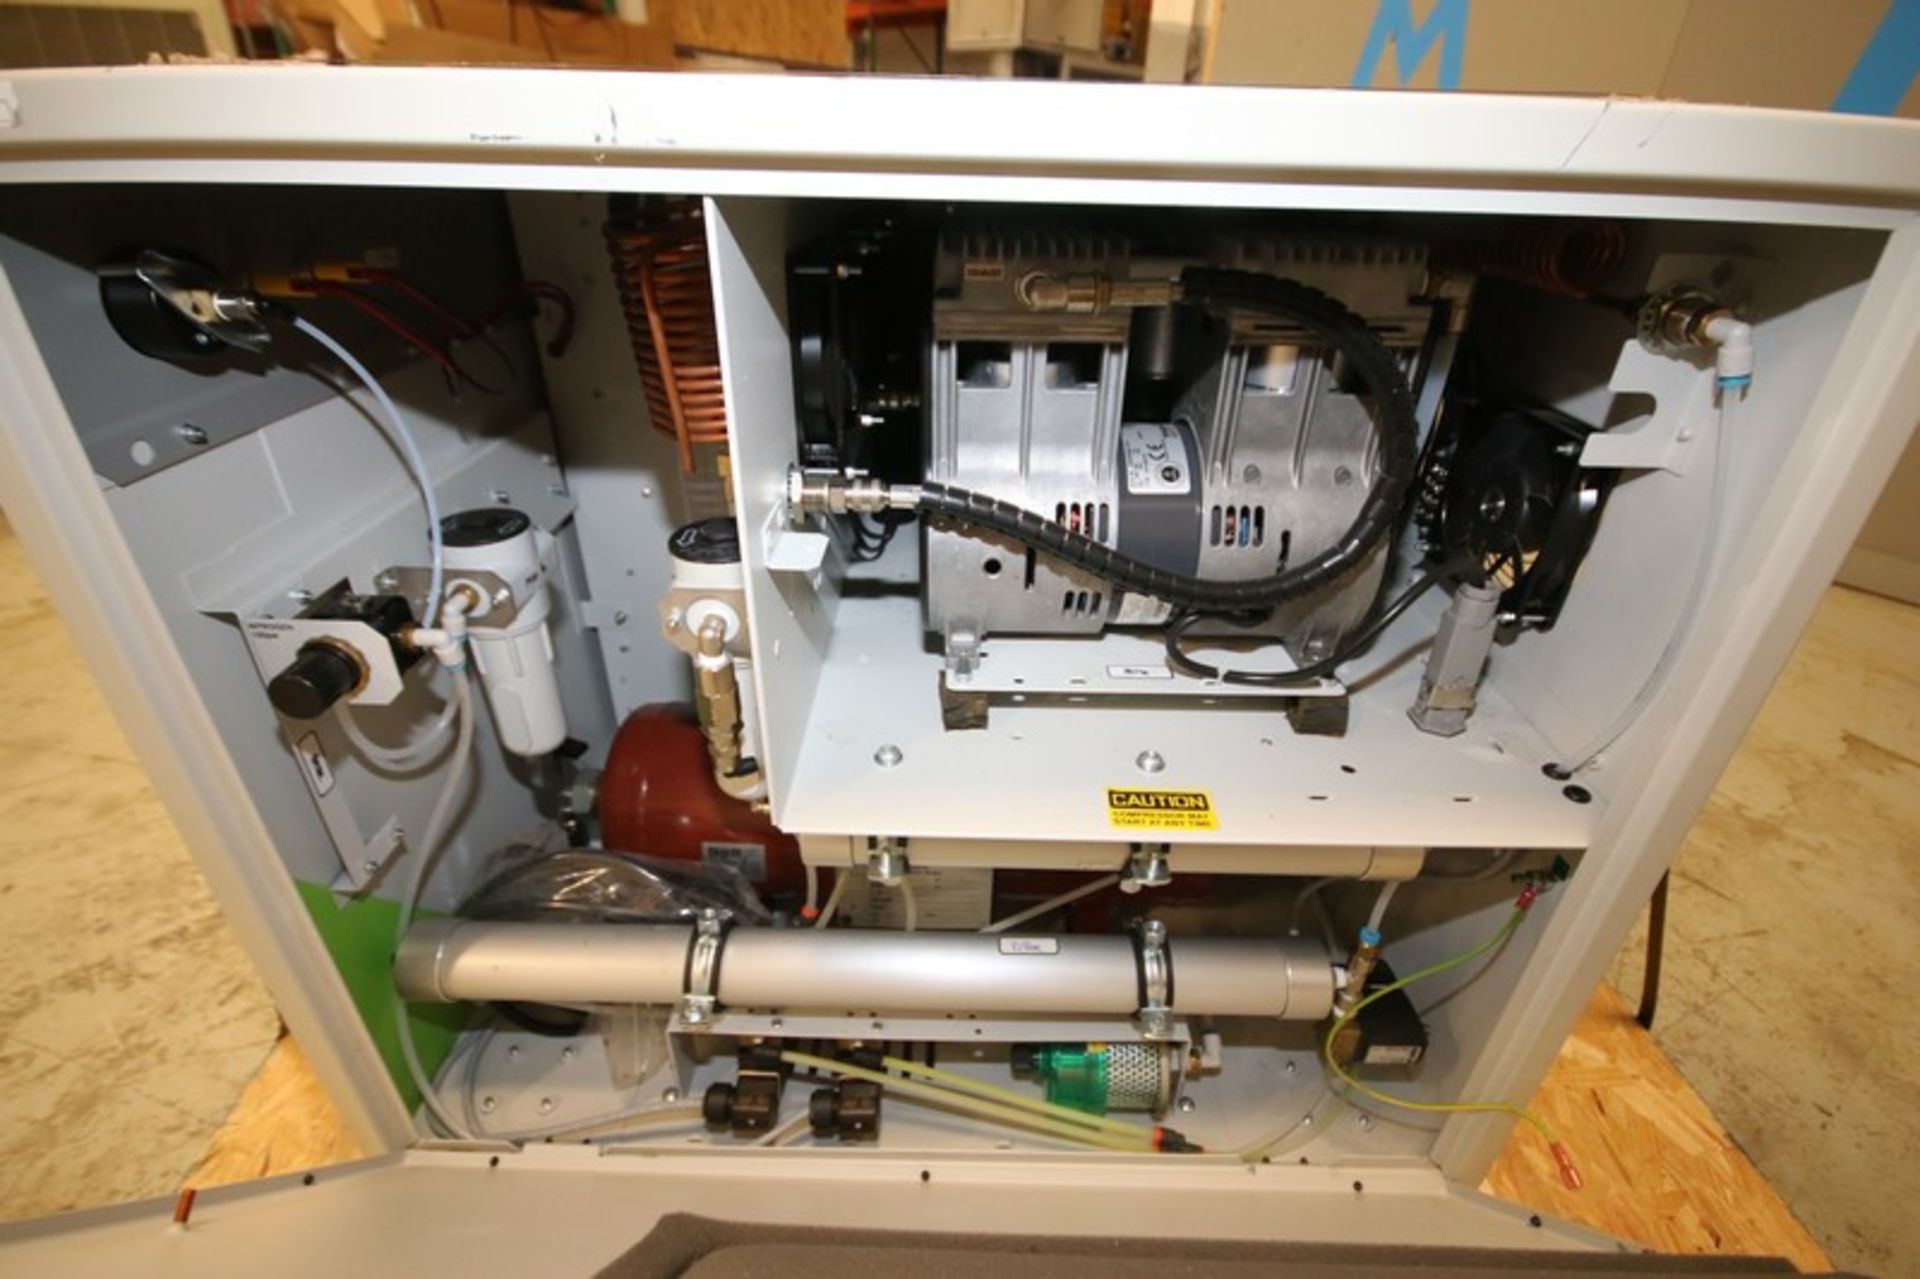 Peak Scientific Portable Nitrogen Generator, Model NM32LA, SN A14-03-116, 230V (INV#101643) (Located - Image 6 of 7